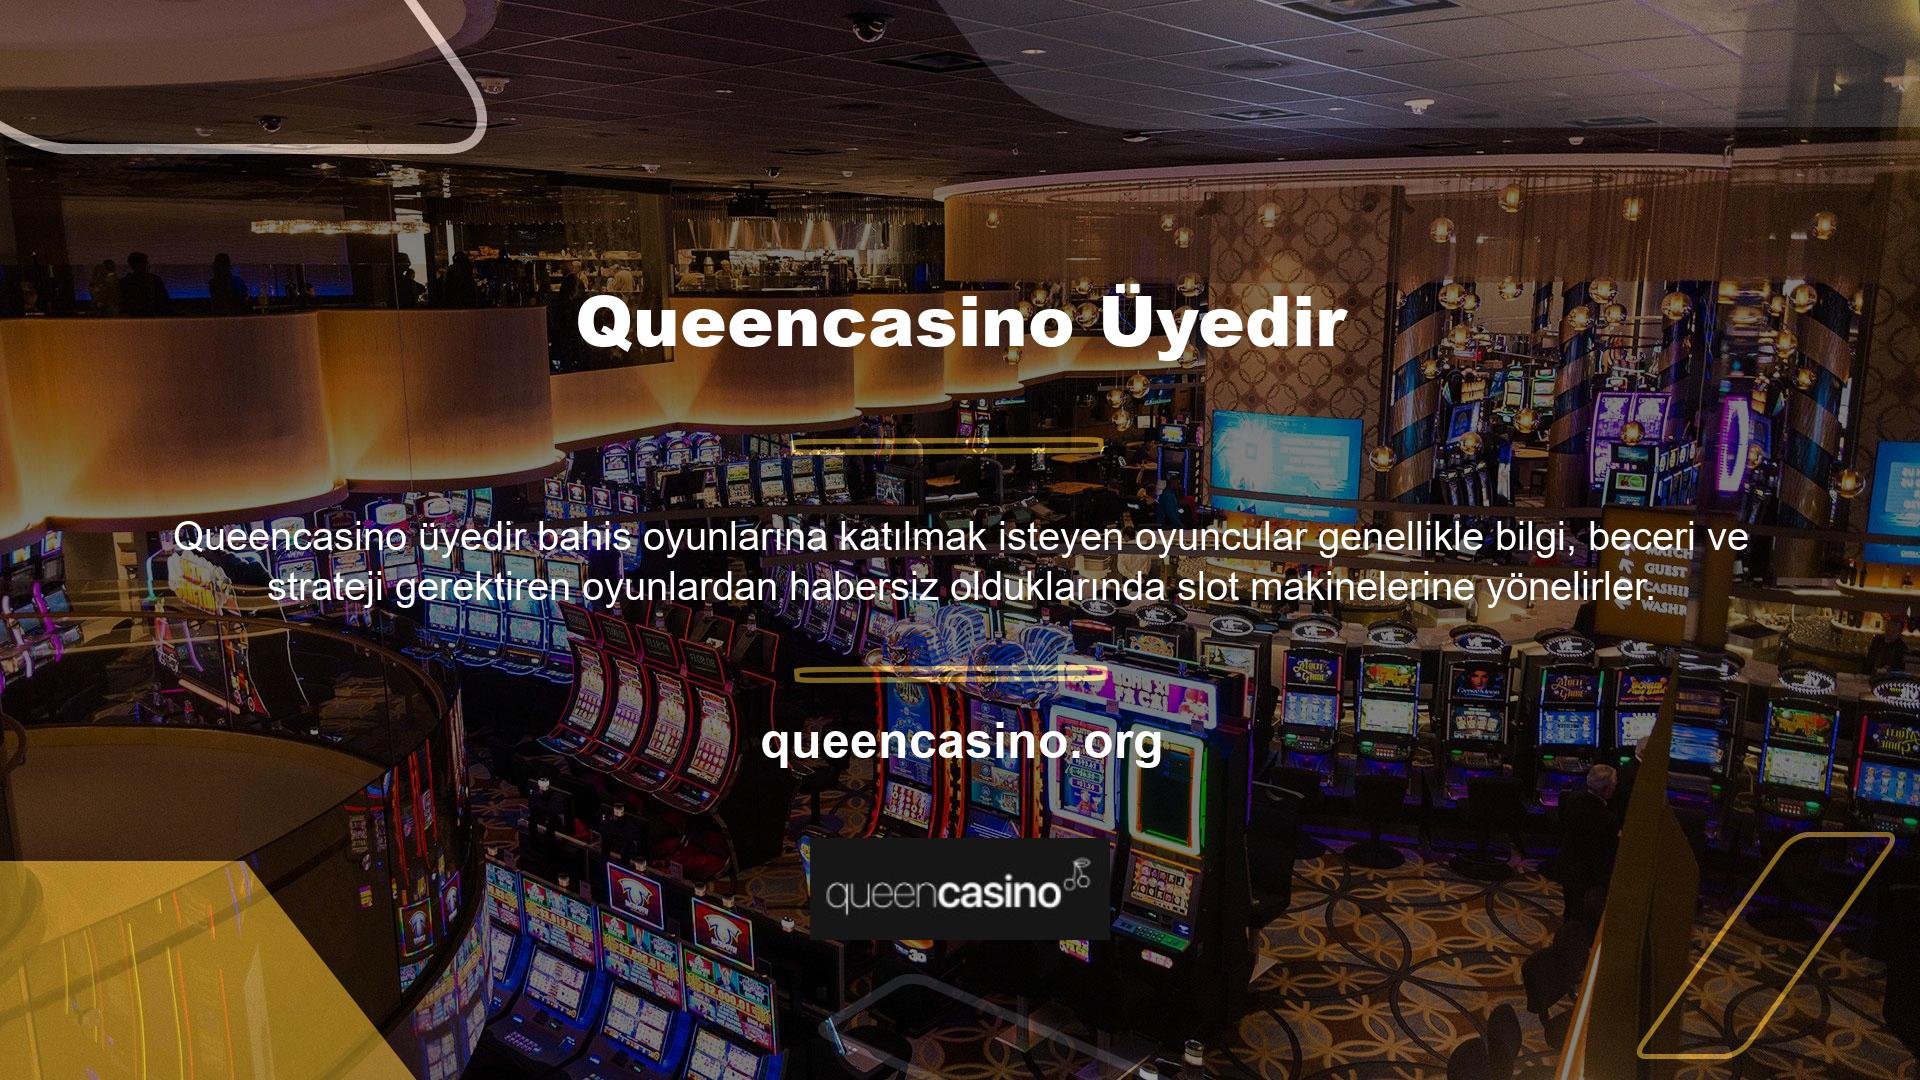 Casino makinelerinde oynamak için bahisçilere kaydolan birçok oyuncu var